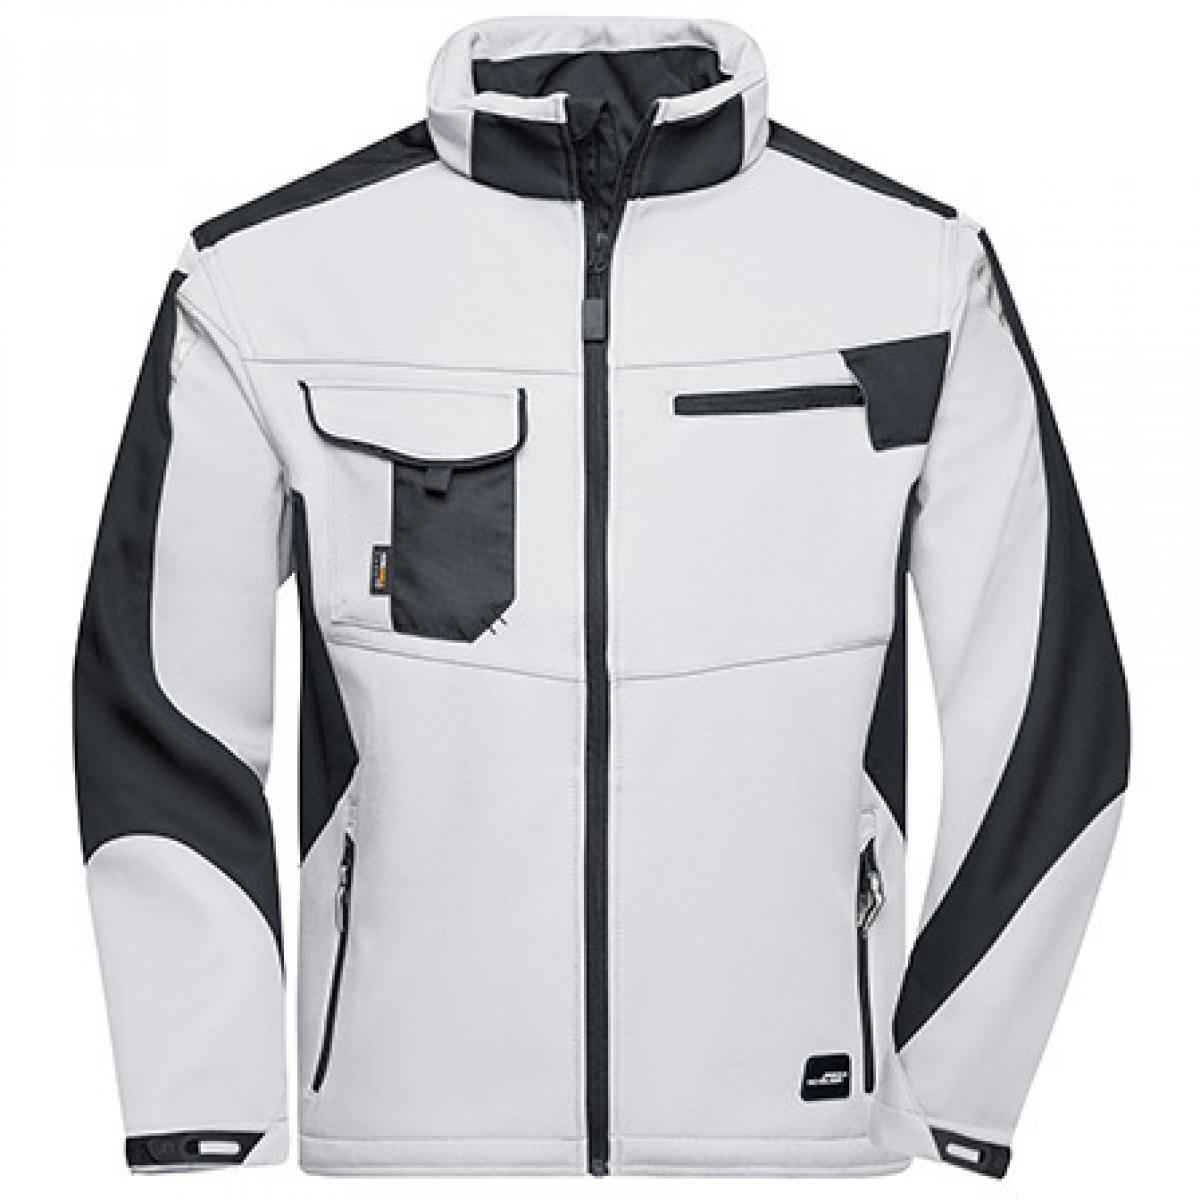 Hersteller: James+Nicholson Herstellernummer: JN844 Artikelbezeichnung: Herren Jacke, Workwear Softshell Jacket -STRONG- Farbe: White/Carbon